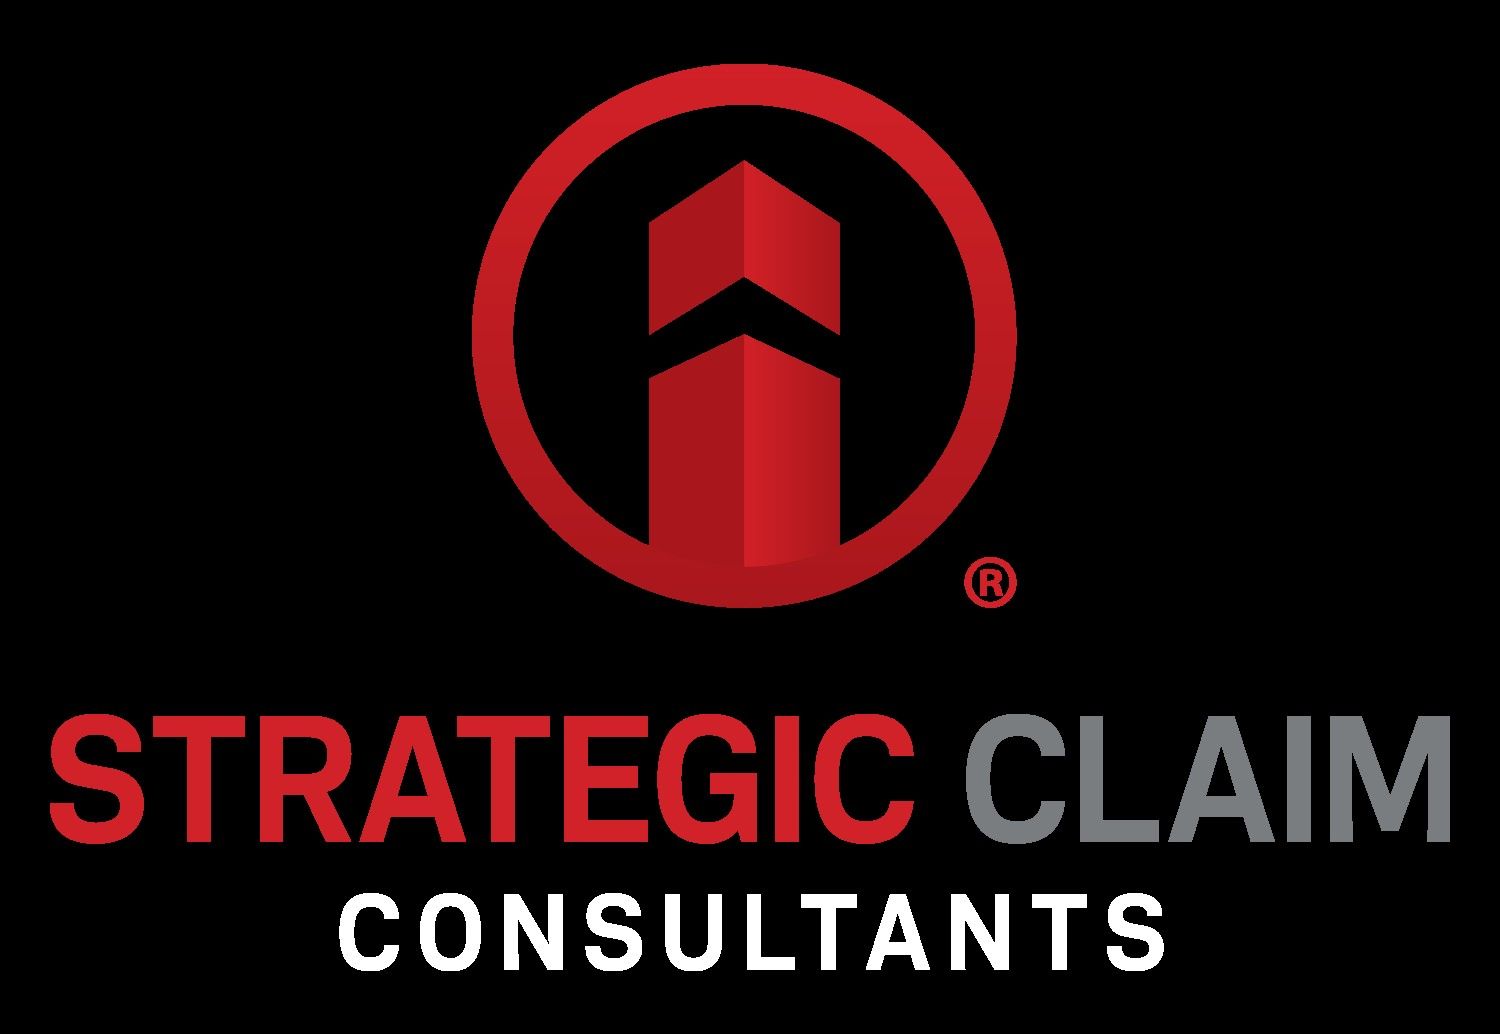 Strategic Claim Consultants